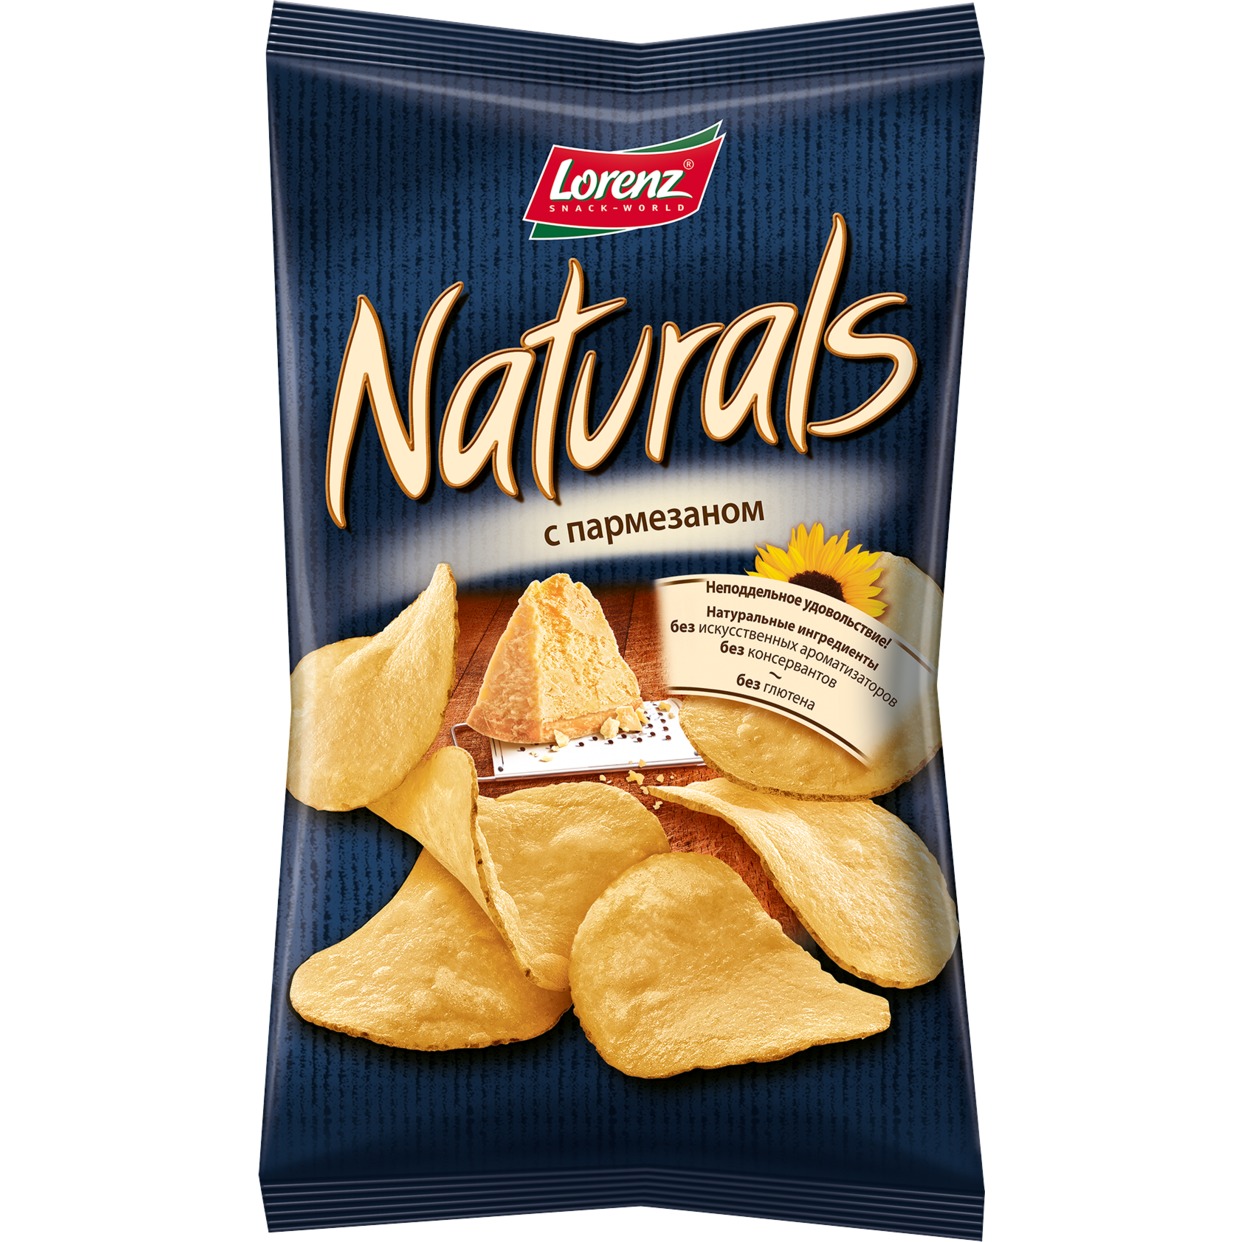 Картофельные чипсы “Naturals” с пармезаном, 100 гр.